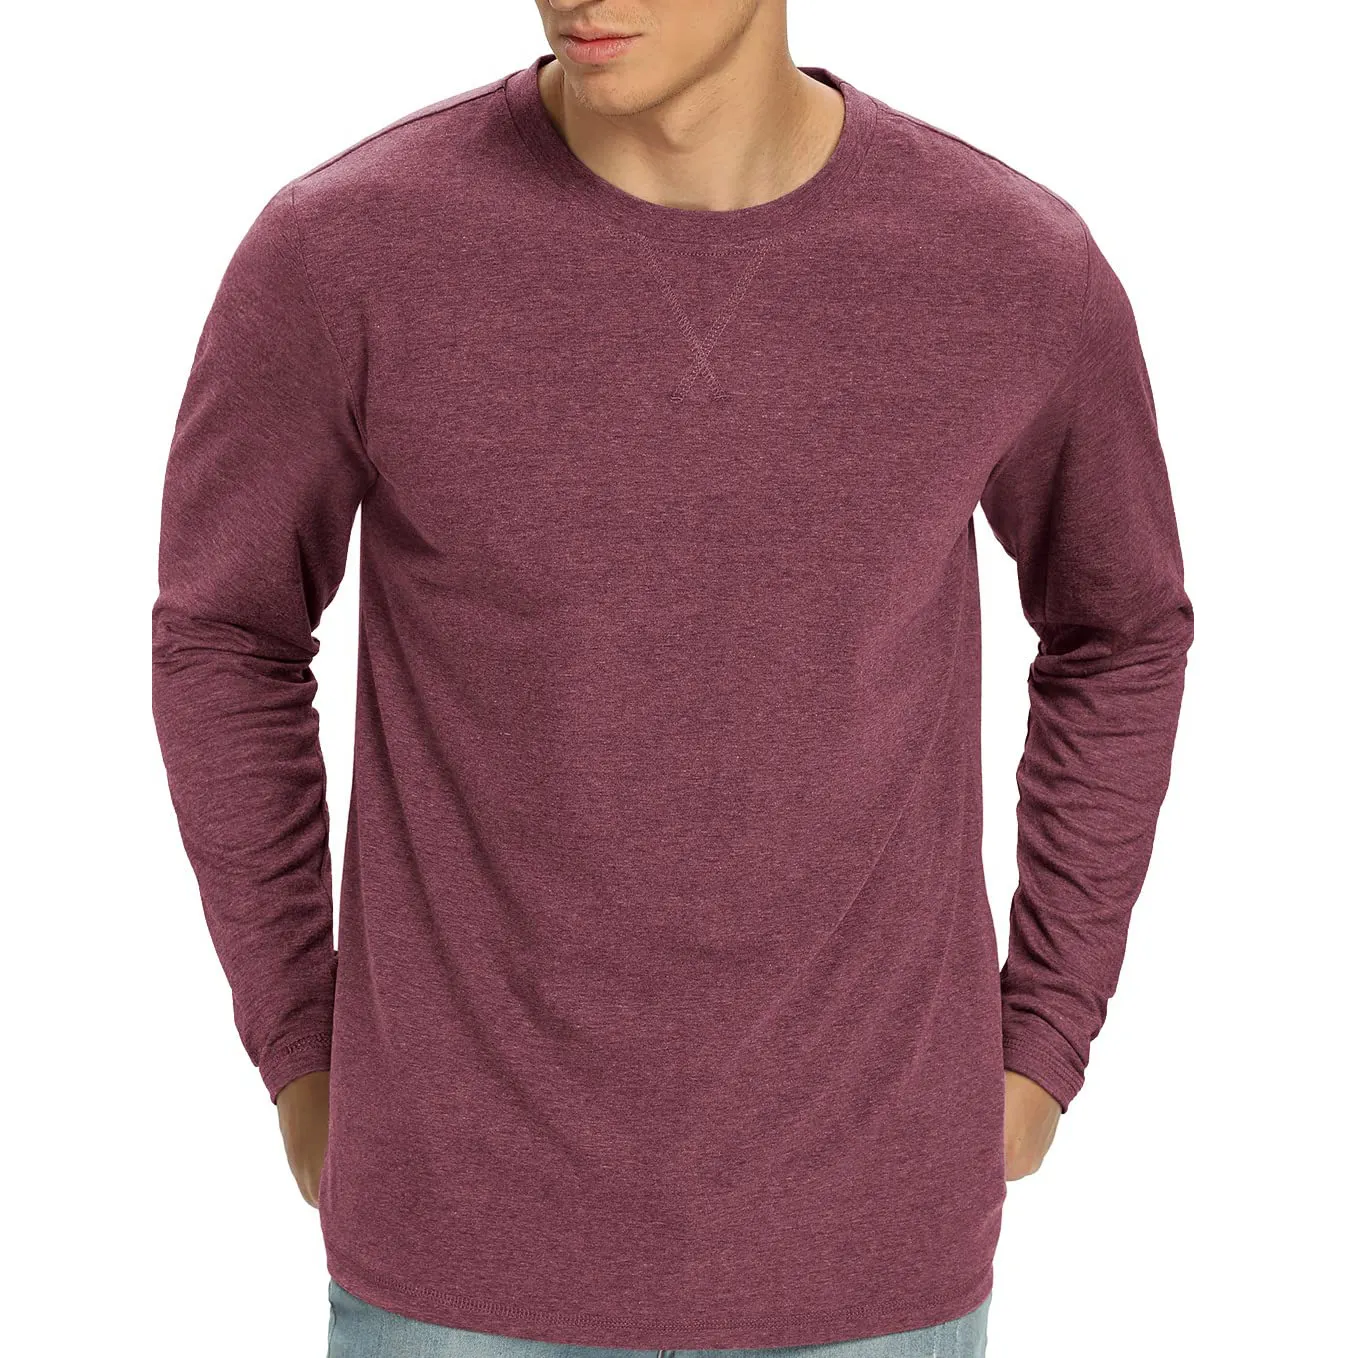 Düz düz renk özel Logo baskılı erkekler T Shirt satılık toptan yeni tasarım en kaliteli pamuk gevşek Fit erkekler T Shirt